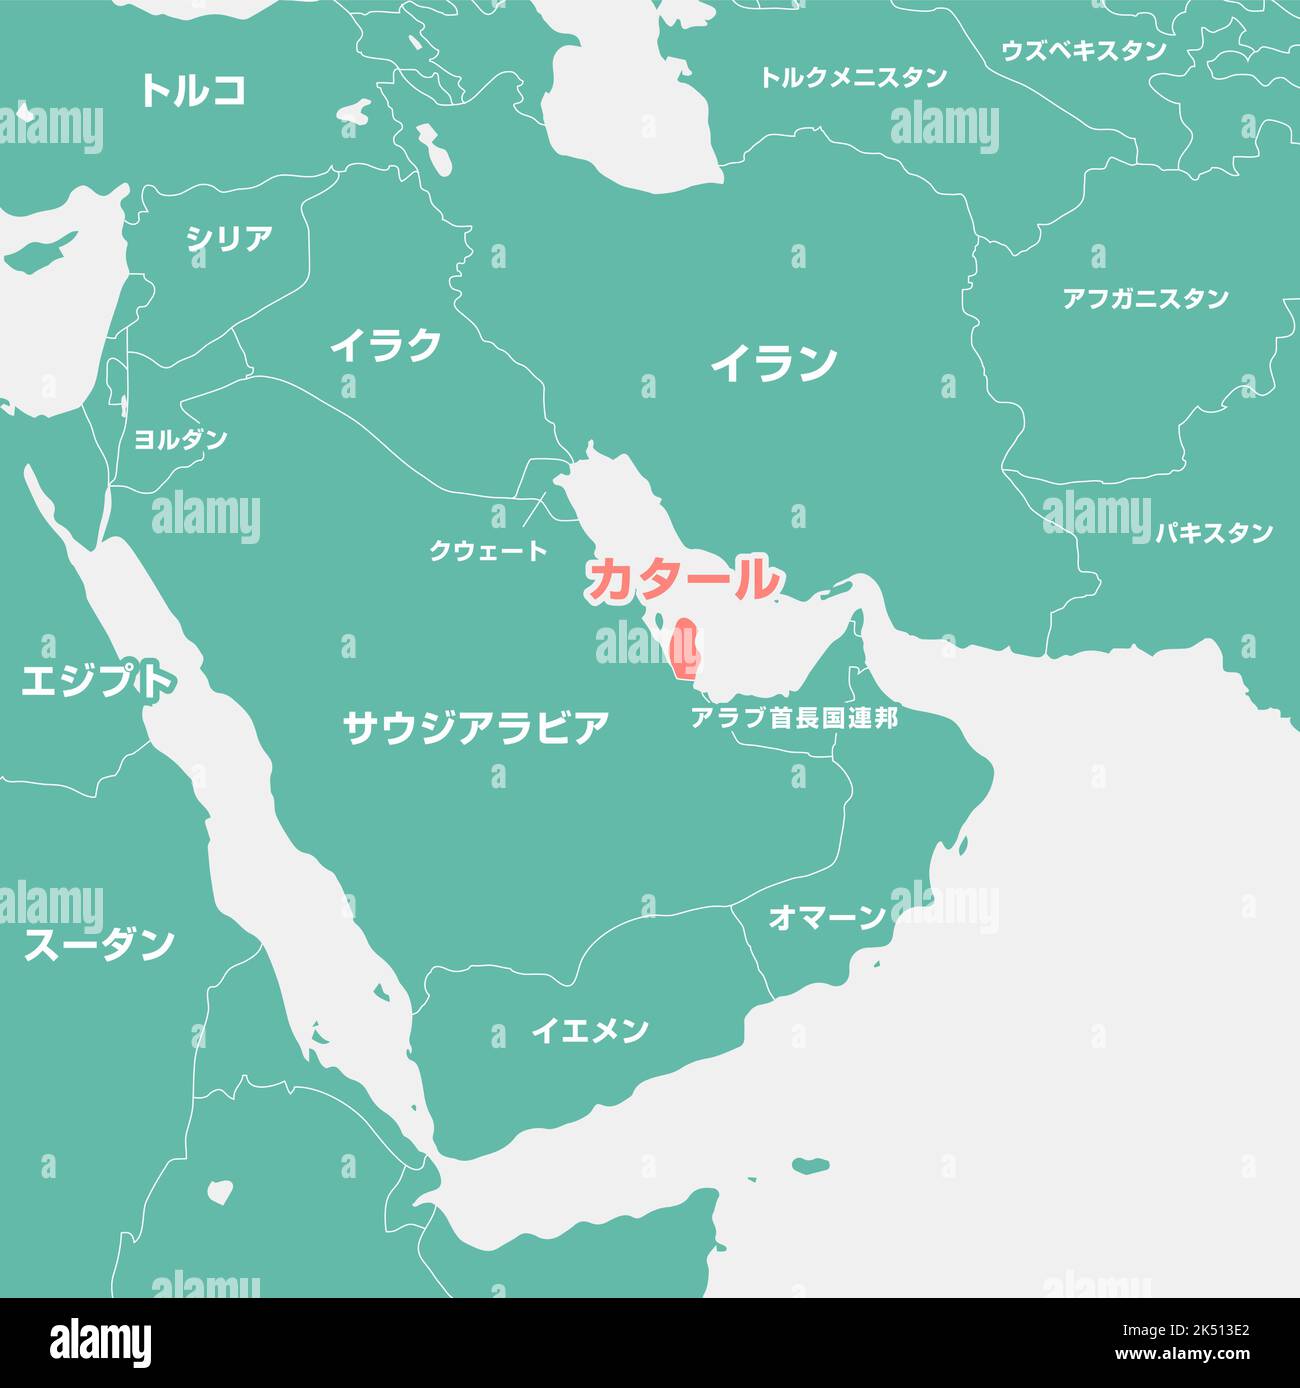 Eine Kartendarstellung des Nahen Ostens mit Fokus auf Katar Stock Vektor